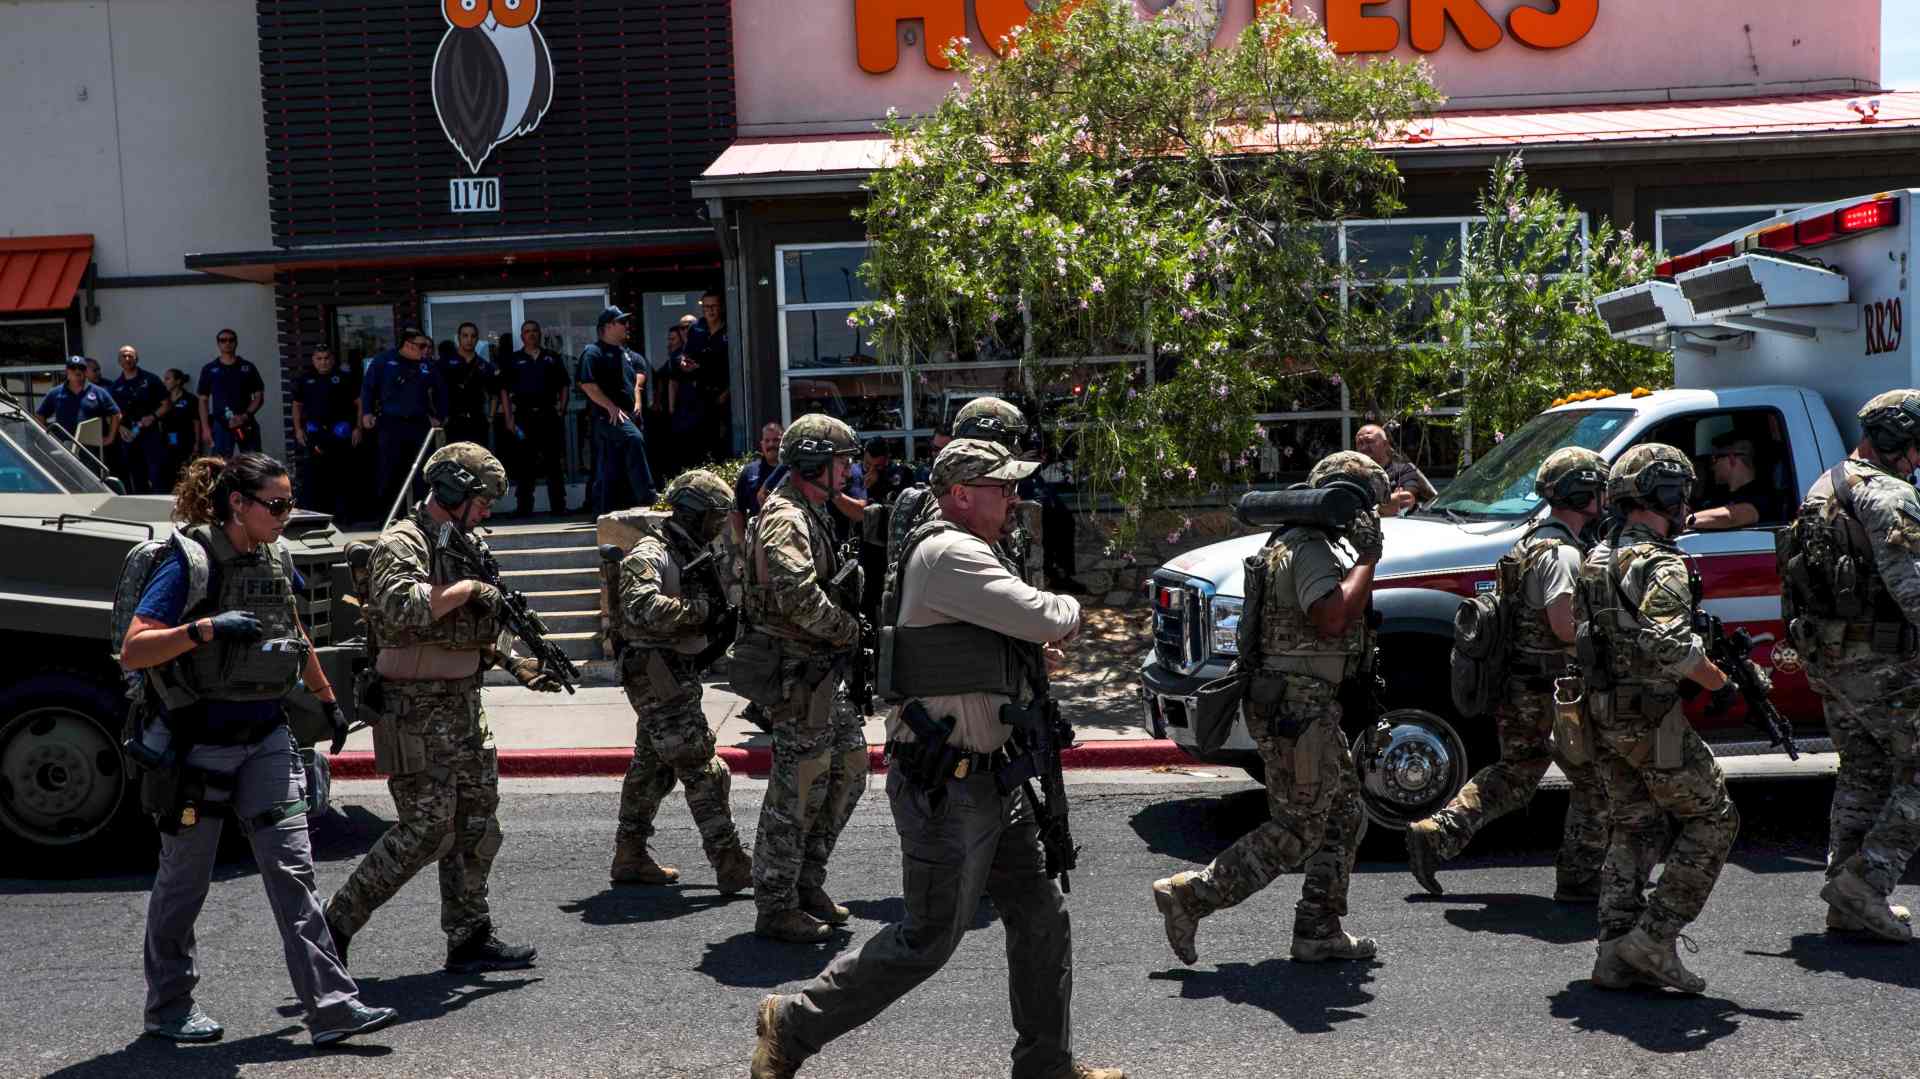 Al menos 20 muertos en un ataque en un centro comercial de El Paso, Texas